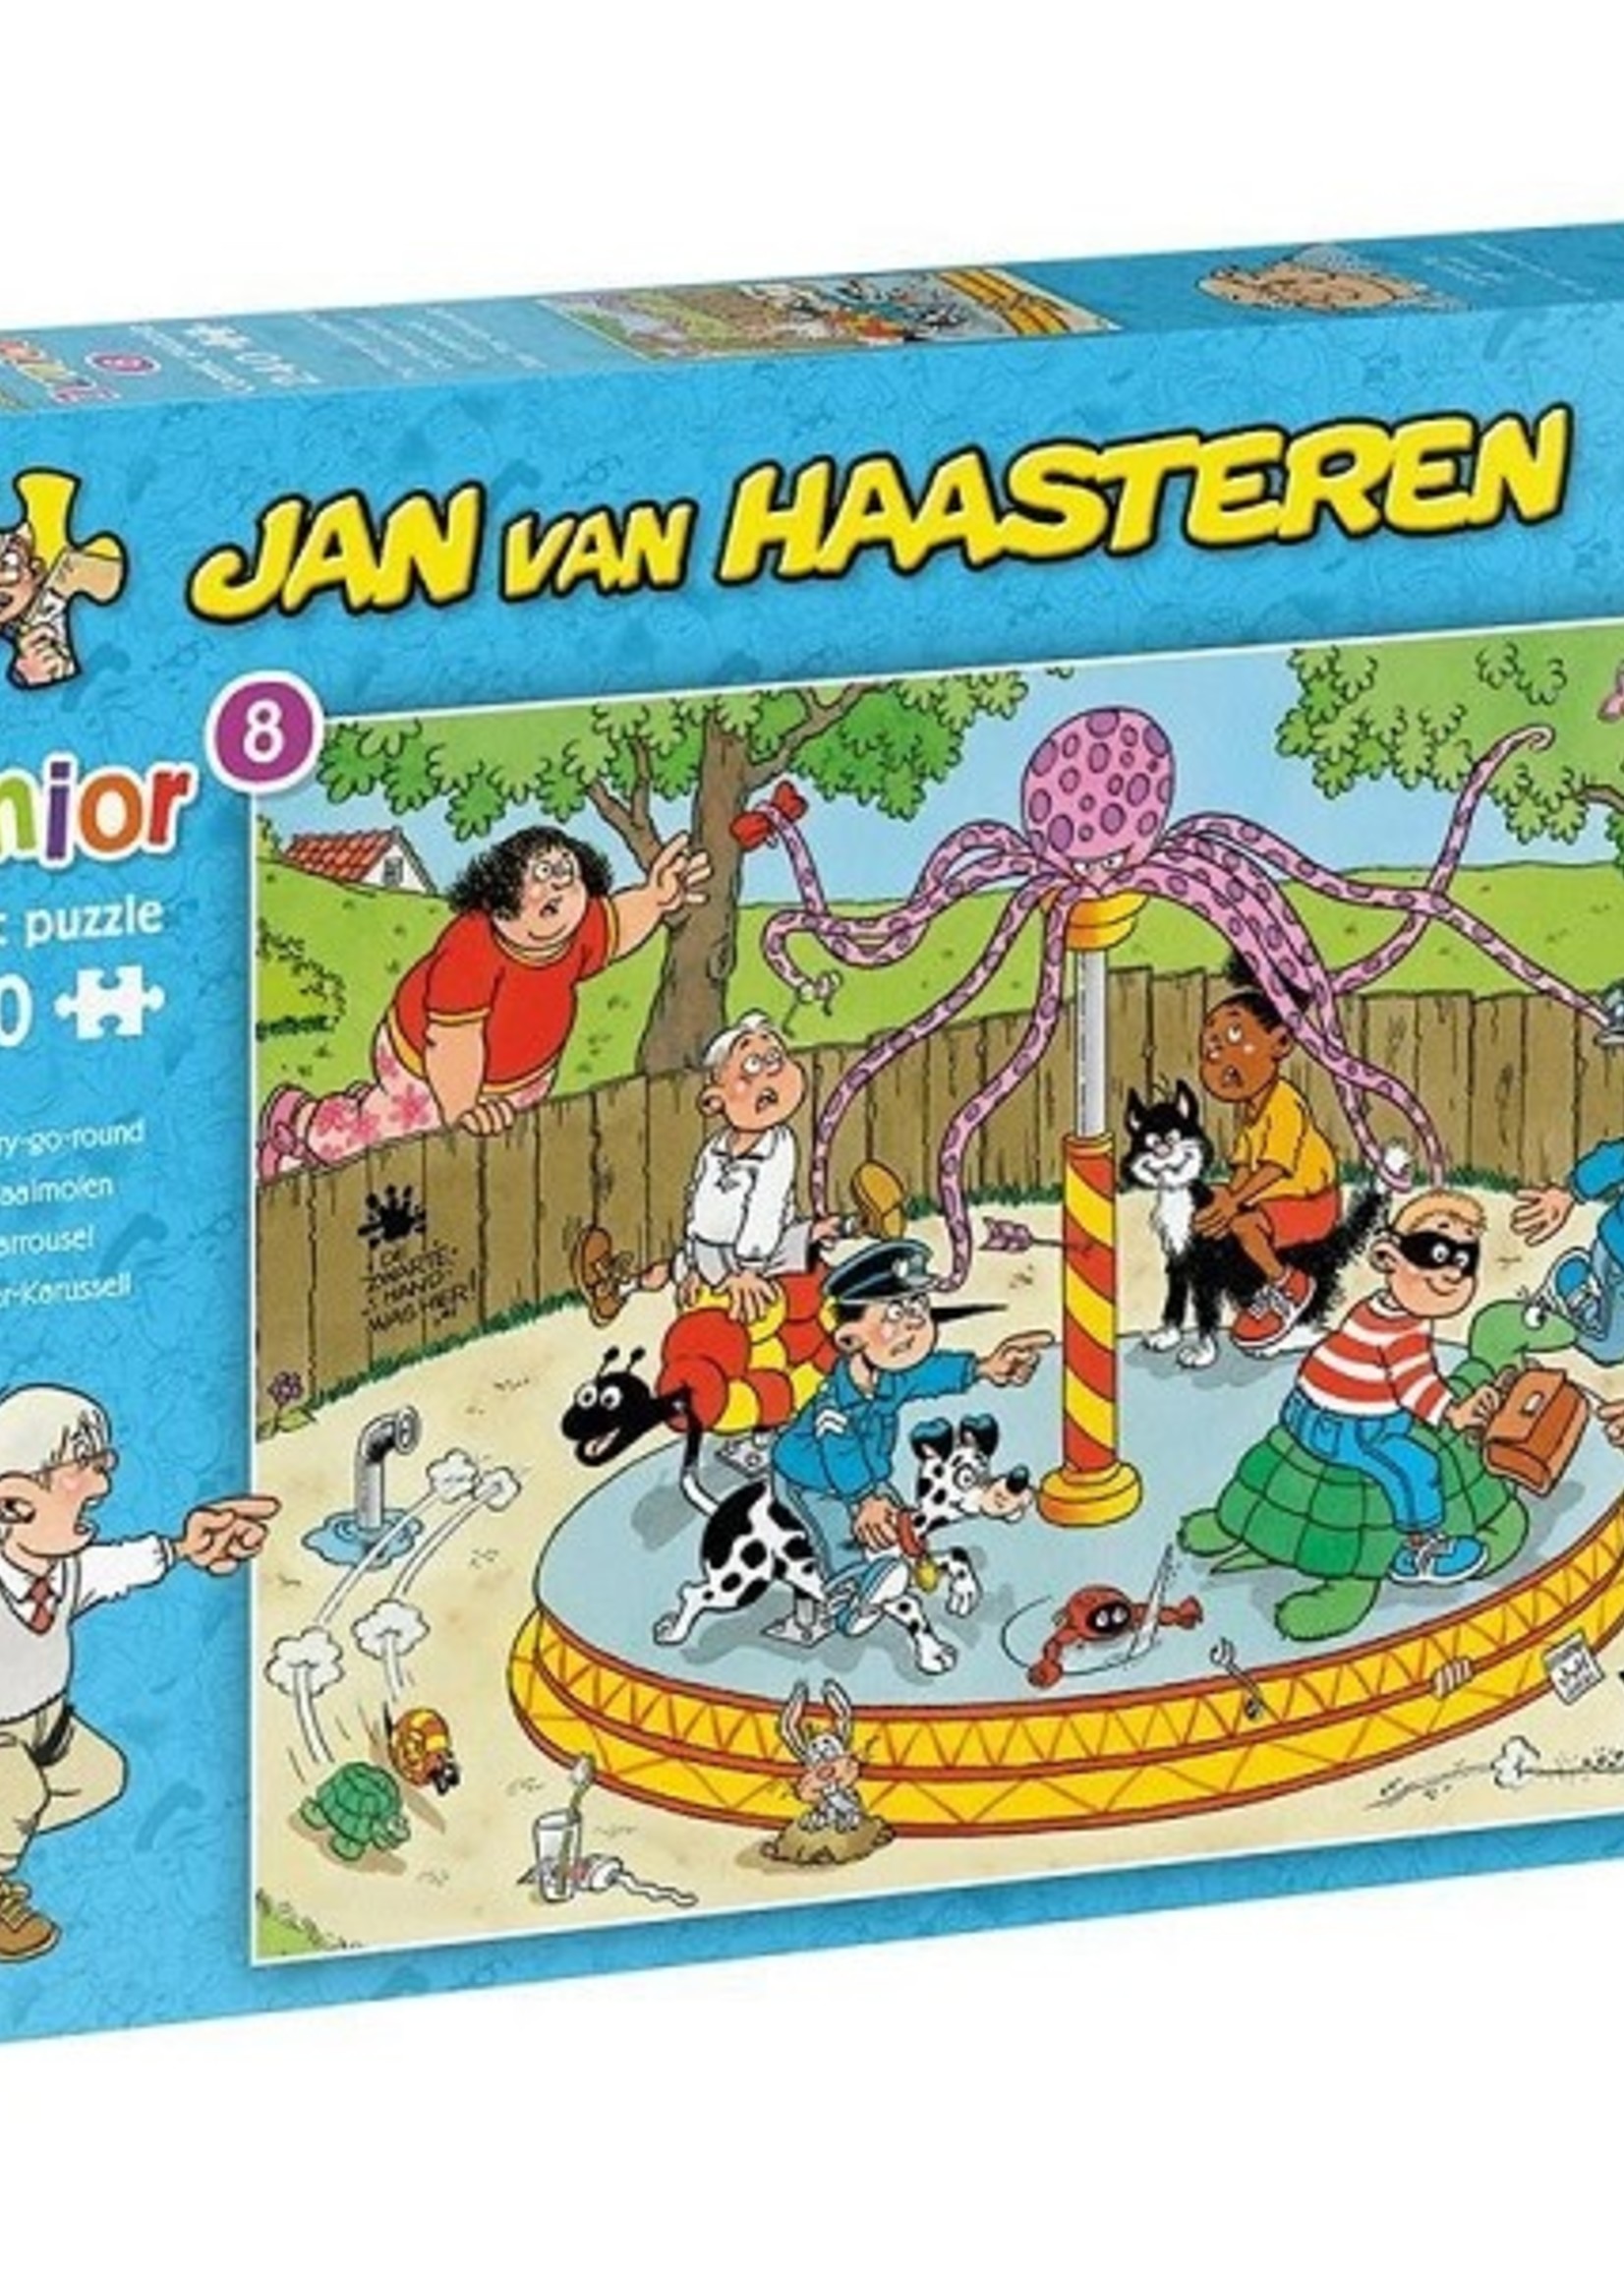 Jumbo Jan van Haasteren Junior puzzel De draaimolen 240 stukjes